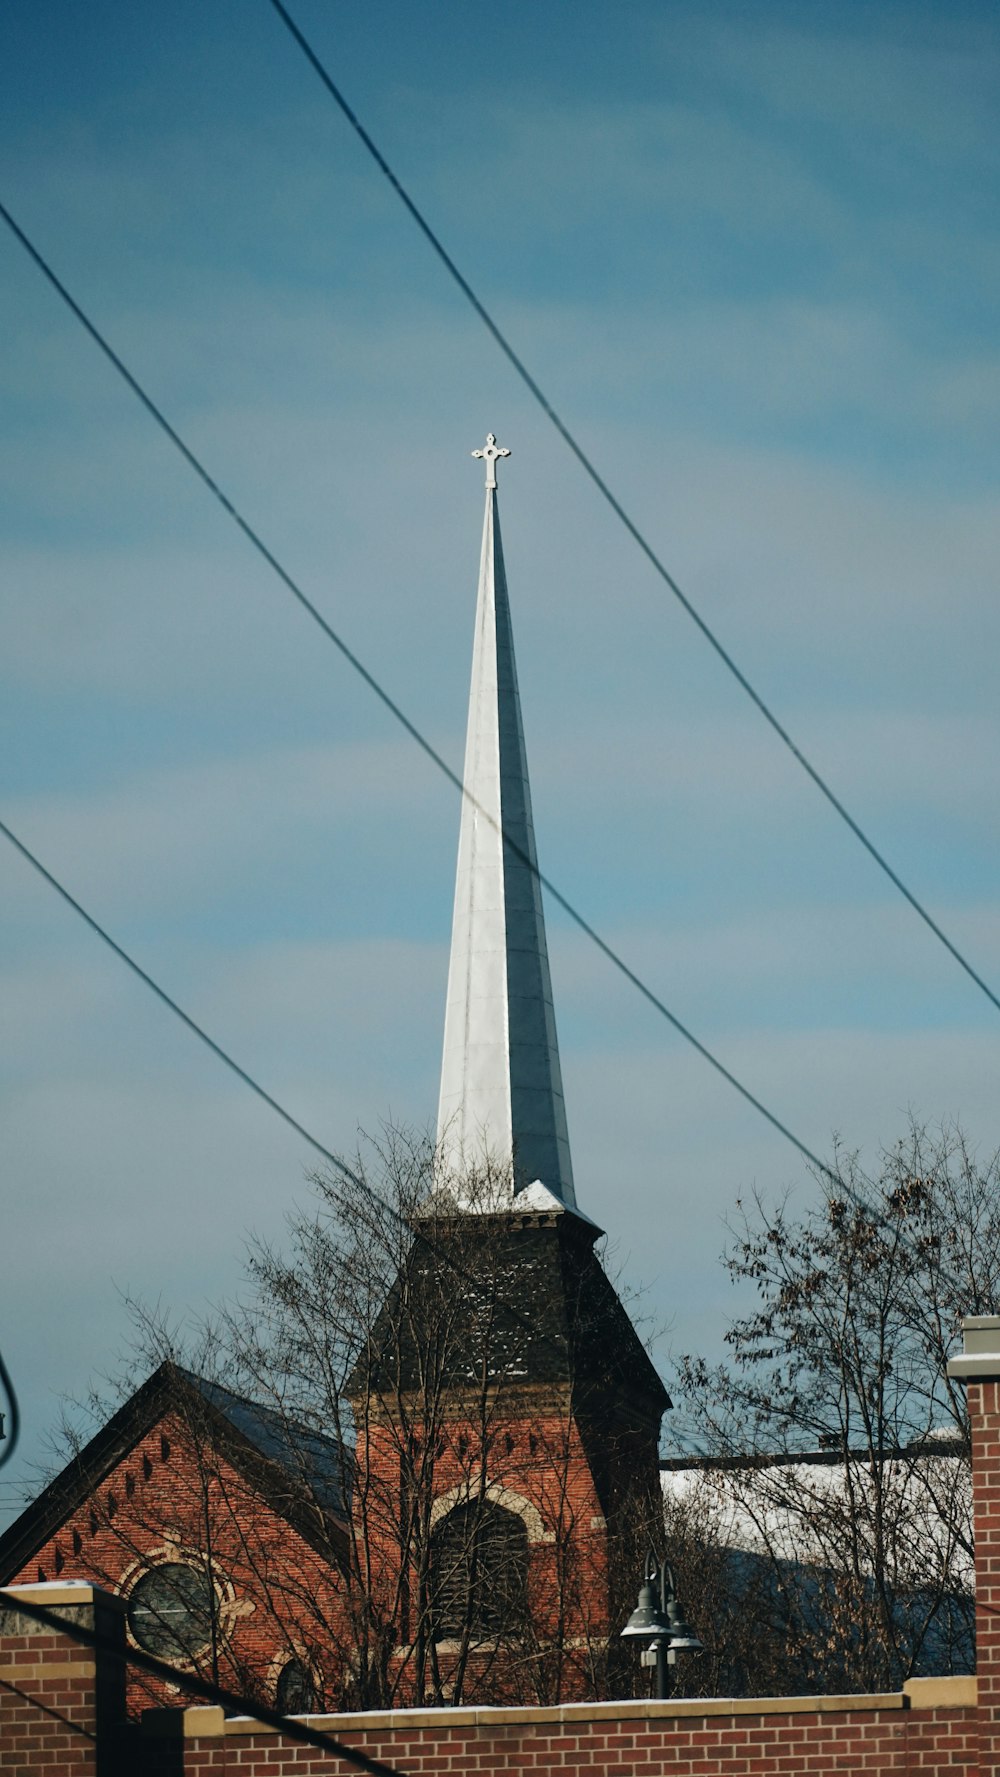 un campanario de iglesia con una cruz en la parte superior